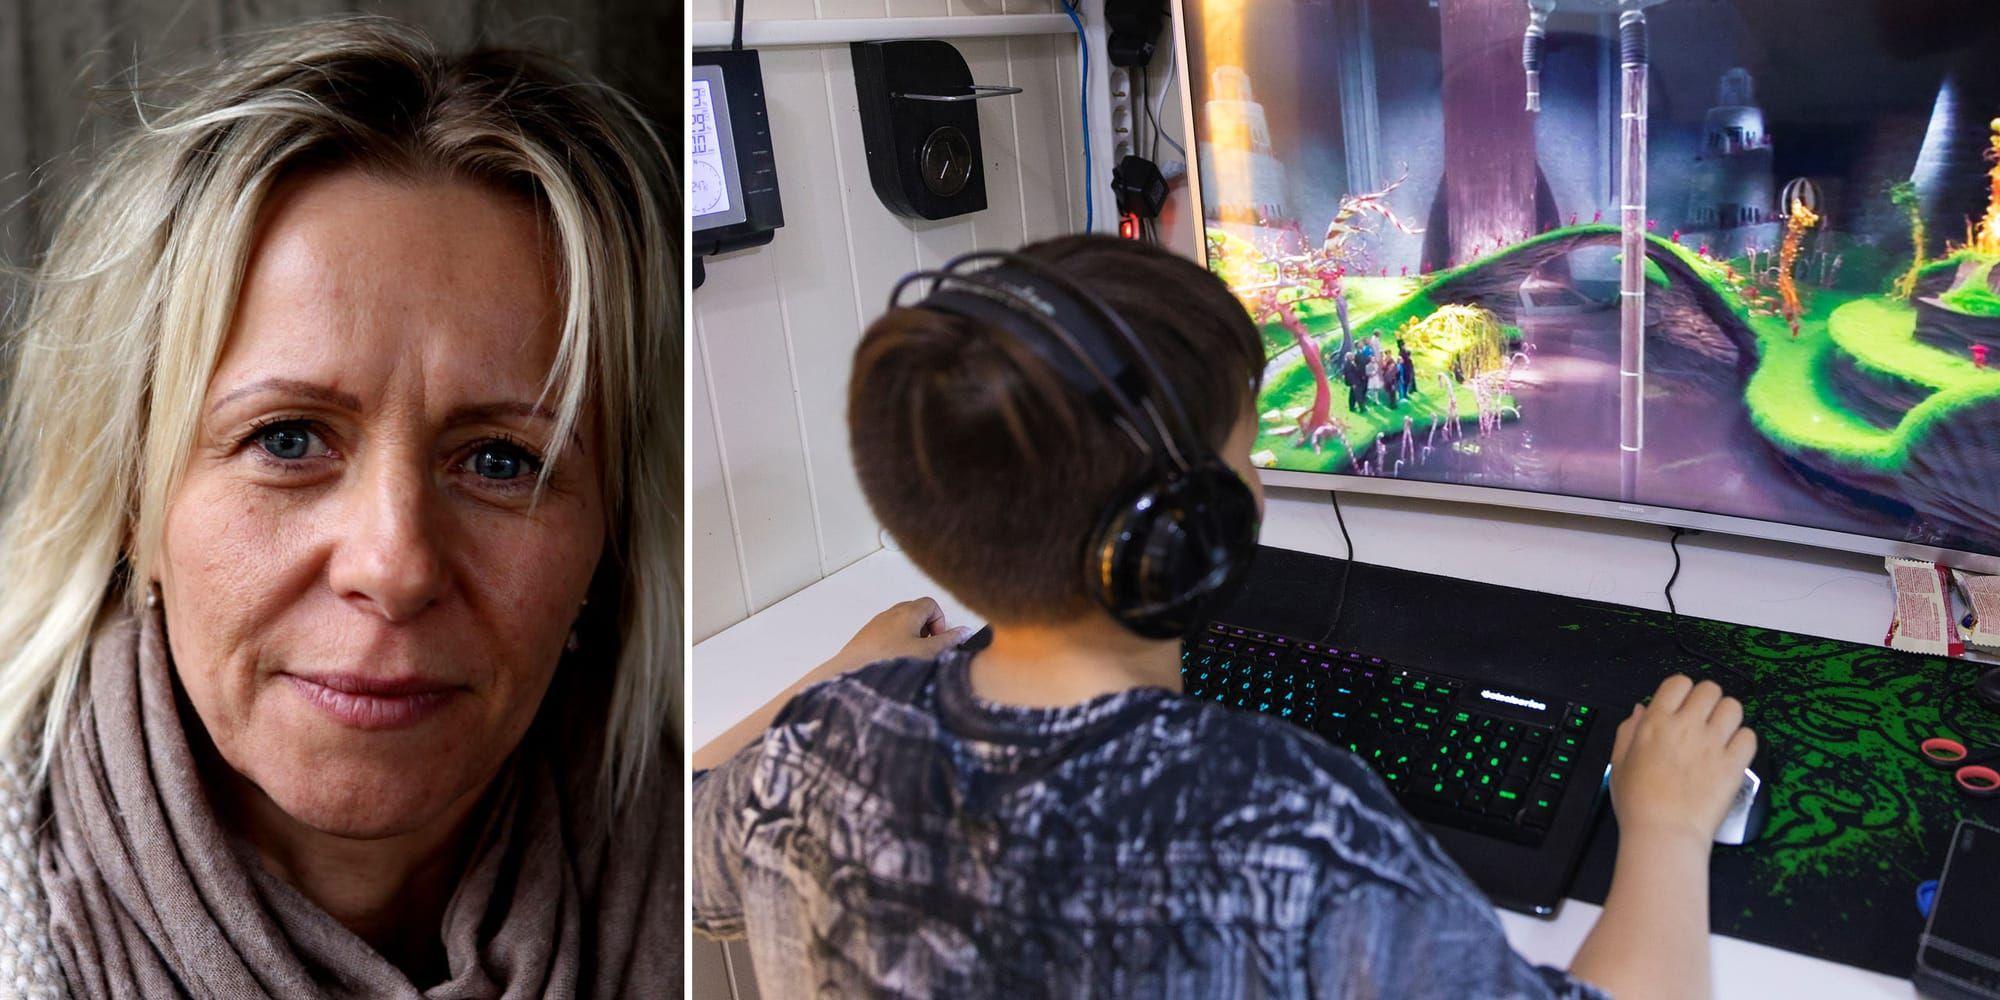 Tarja Larsson, beteendevetare och projektledare för Överdrivet datorspelande som hjälper oroliga anhöriga och unga perosner som spelar för mycket, tycker att föräldrar måste bli bättre på att förstå vad deras barn gör när de spelar eller är ute på nätet. Eftersom barnen ofta sitter själv utan insyn har många föräldrar dålig kunskap om vad de gör, menar hon. Bild: Lasse Keybets/Privat och TT.